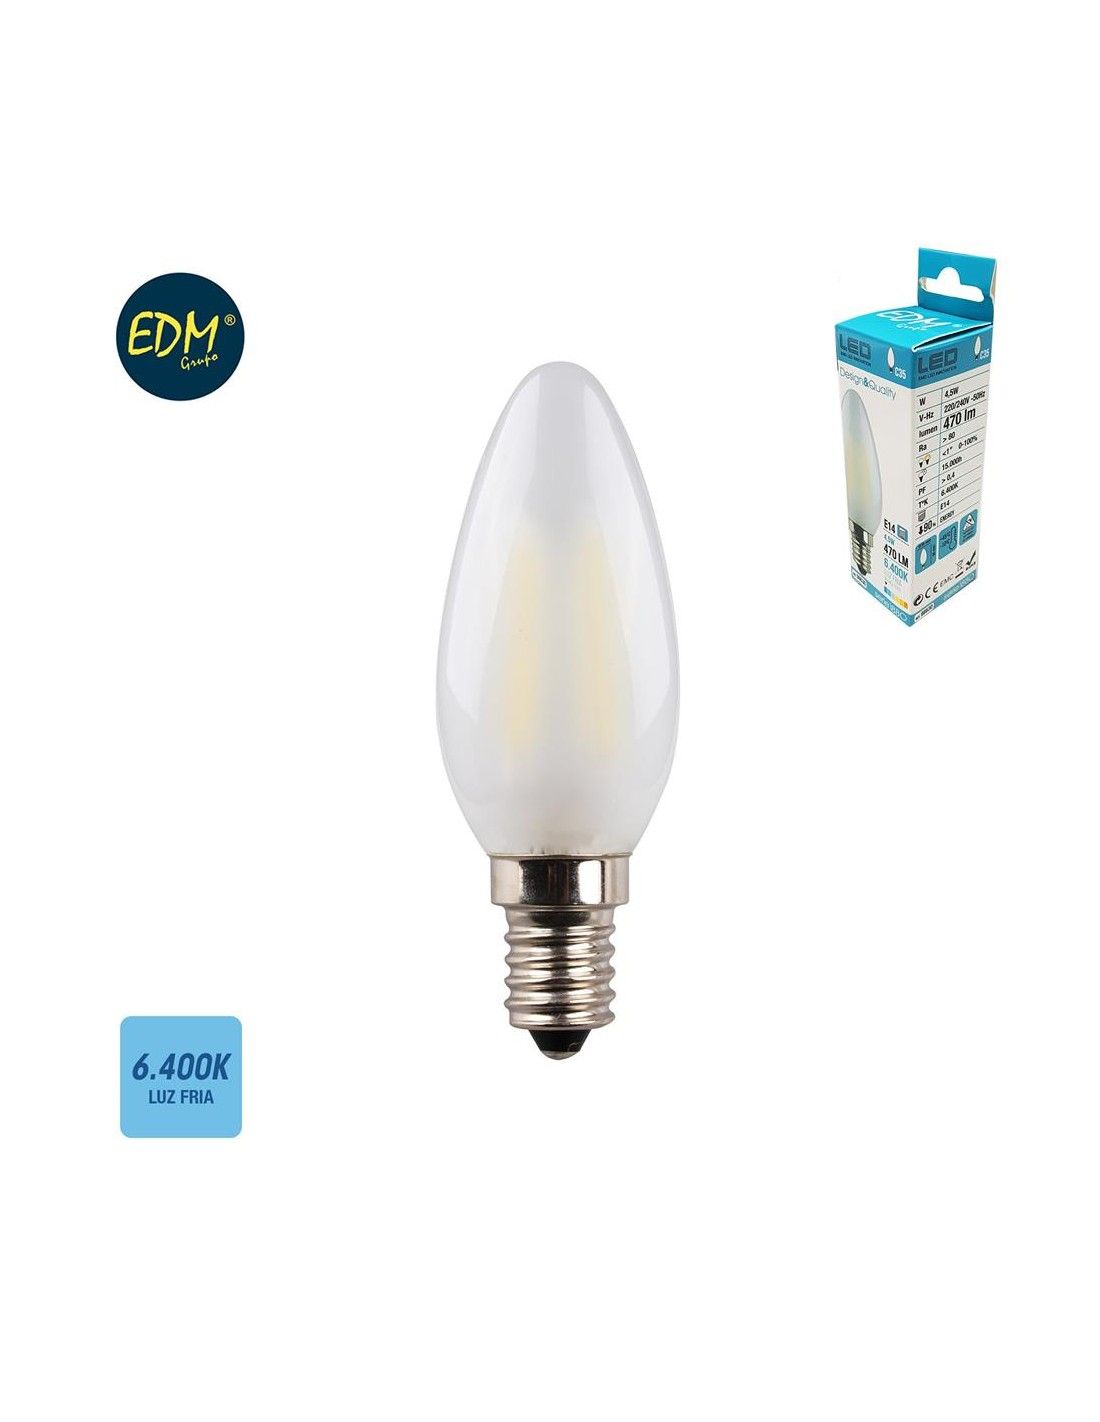 E14 ampoule LED, ampoules à bougies LED petite vis, 4.5w, 470lm